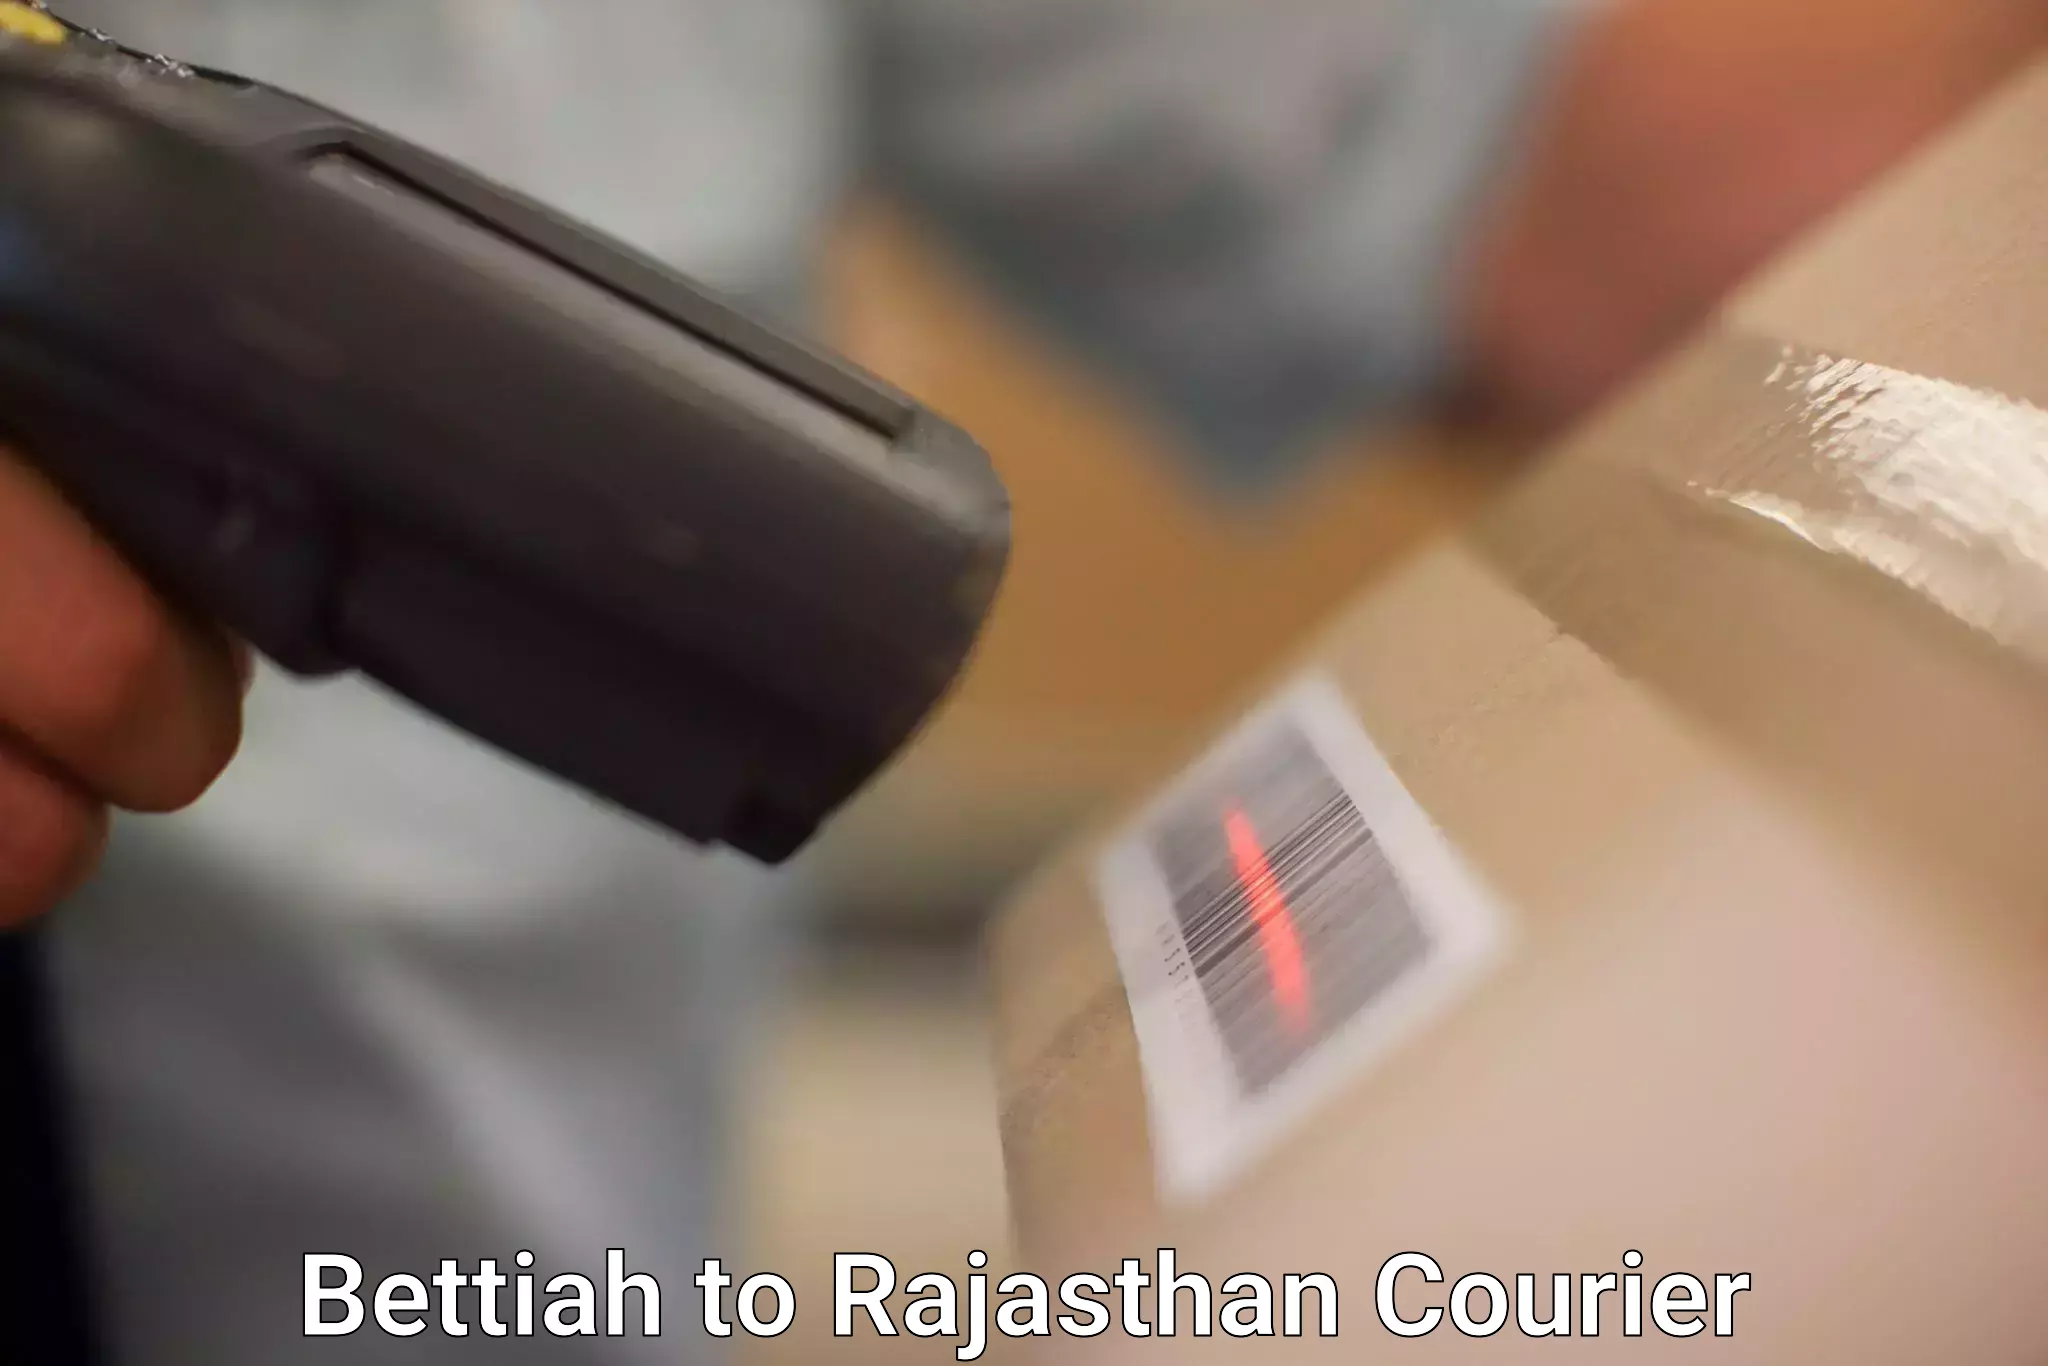 Quick dispatch service Bettiah to Deogarh Rajsamand